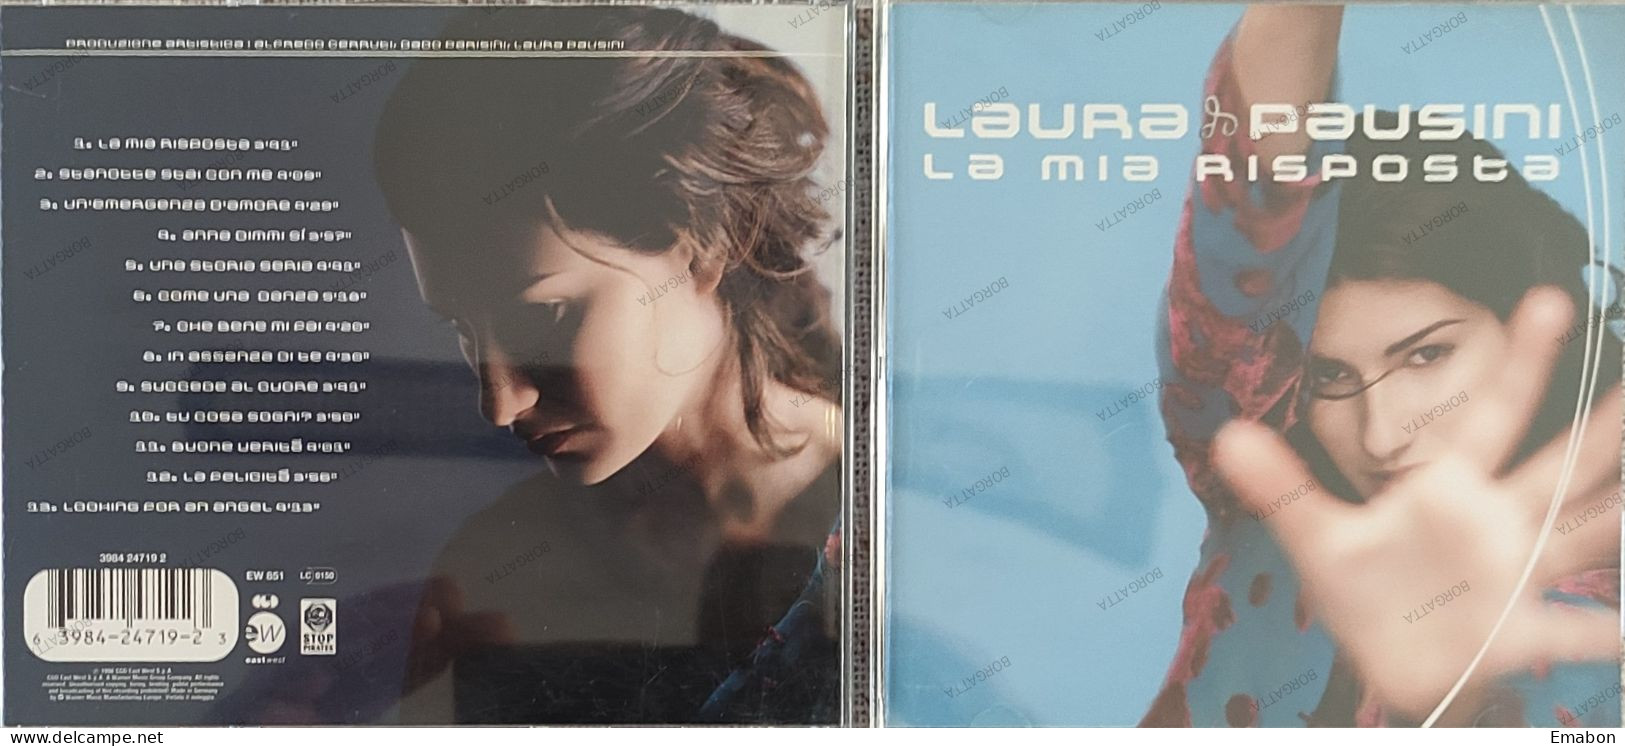 BORGATTA - ITALIANA  - Cd LAURA PAUSINI - LA MIA RISPOSTA  - CGD EAST 1998 -  USATO In Buono Stato - Other - Italian Music